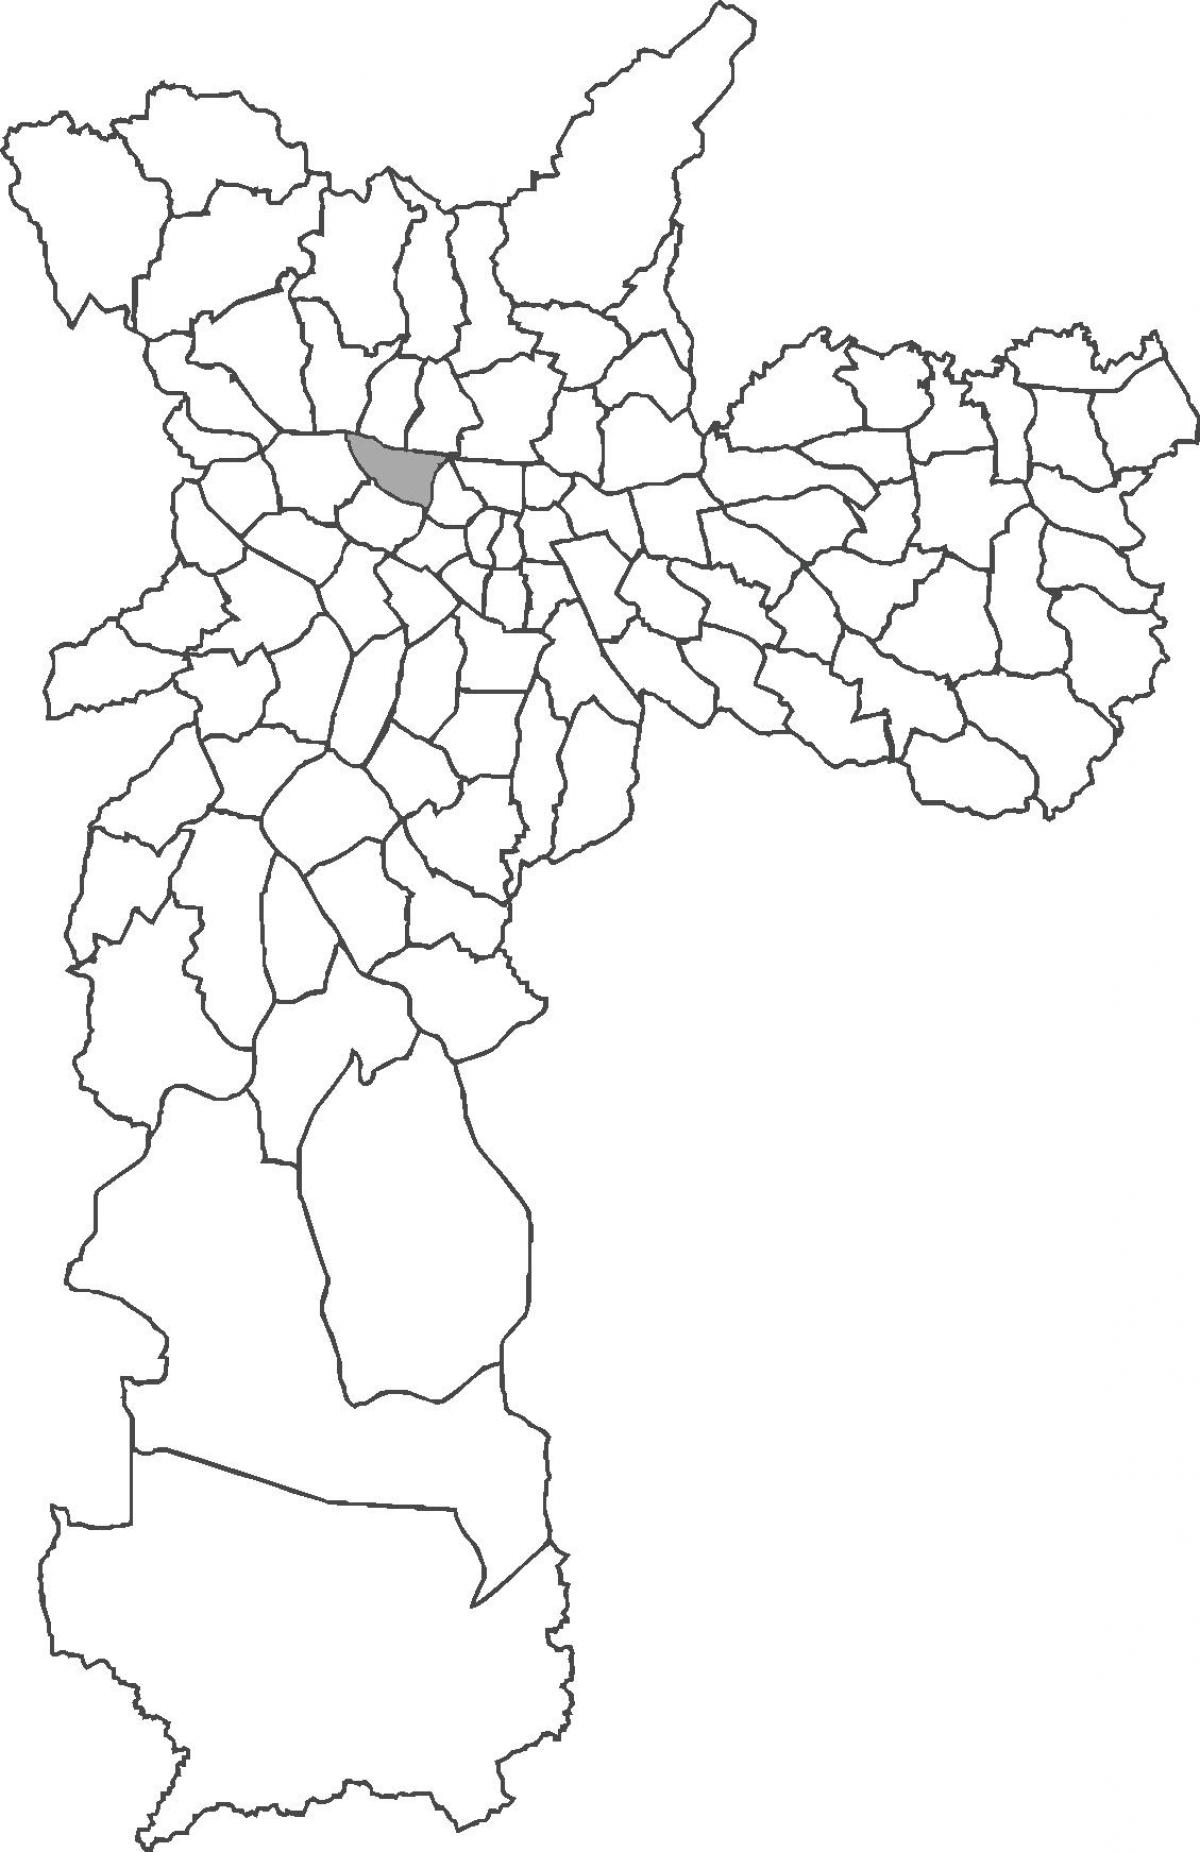 地図のバラFunda地区